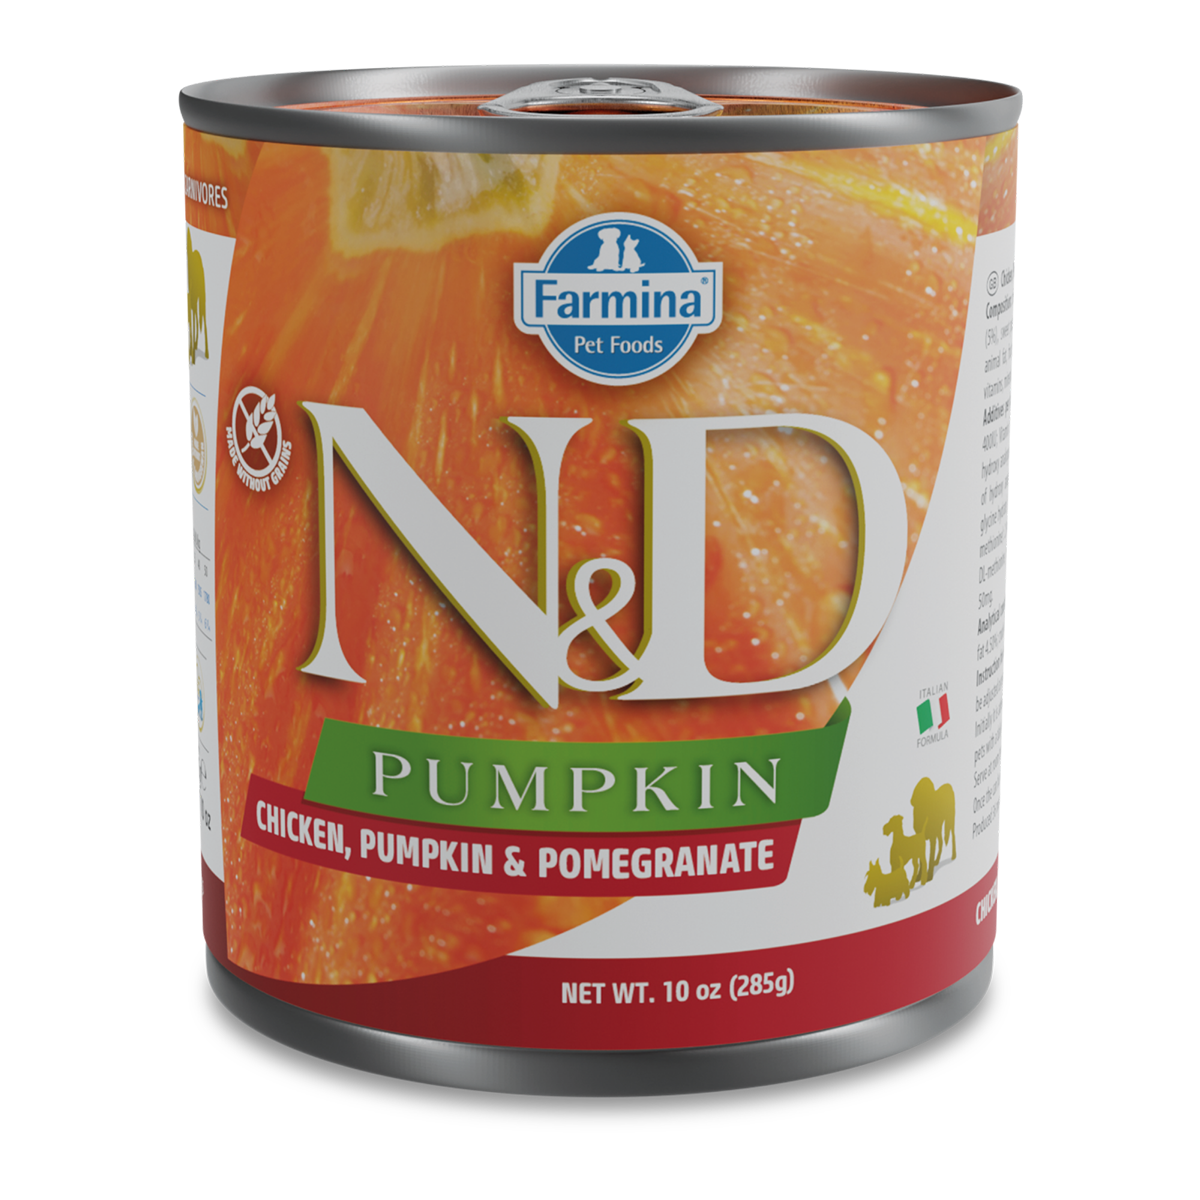 Farmina N&D Pumpkin Adult Wet Dog Food - Chicken, Pumpkin & Pomegranate